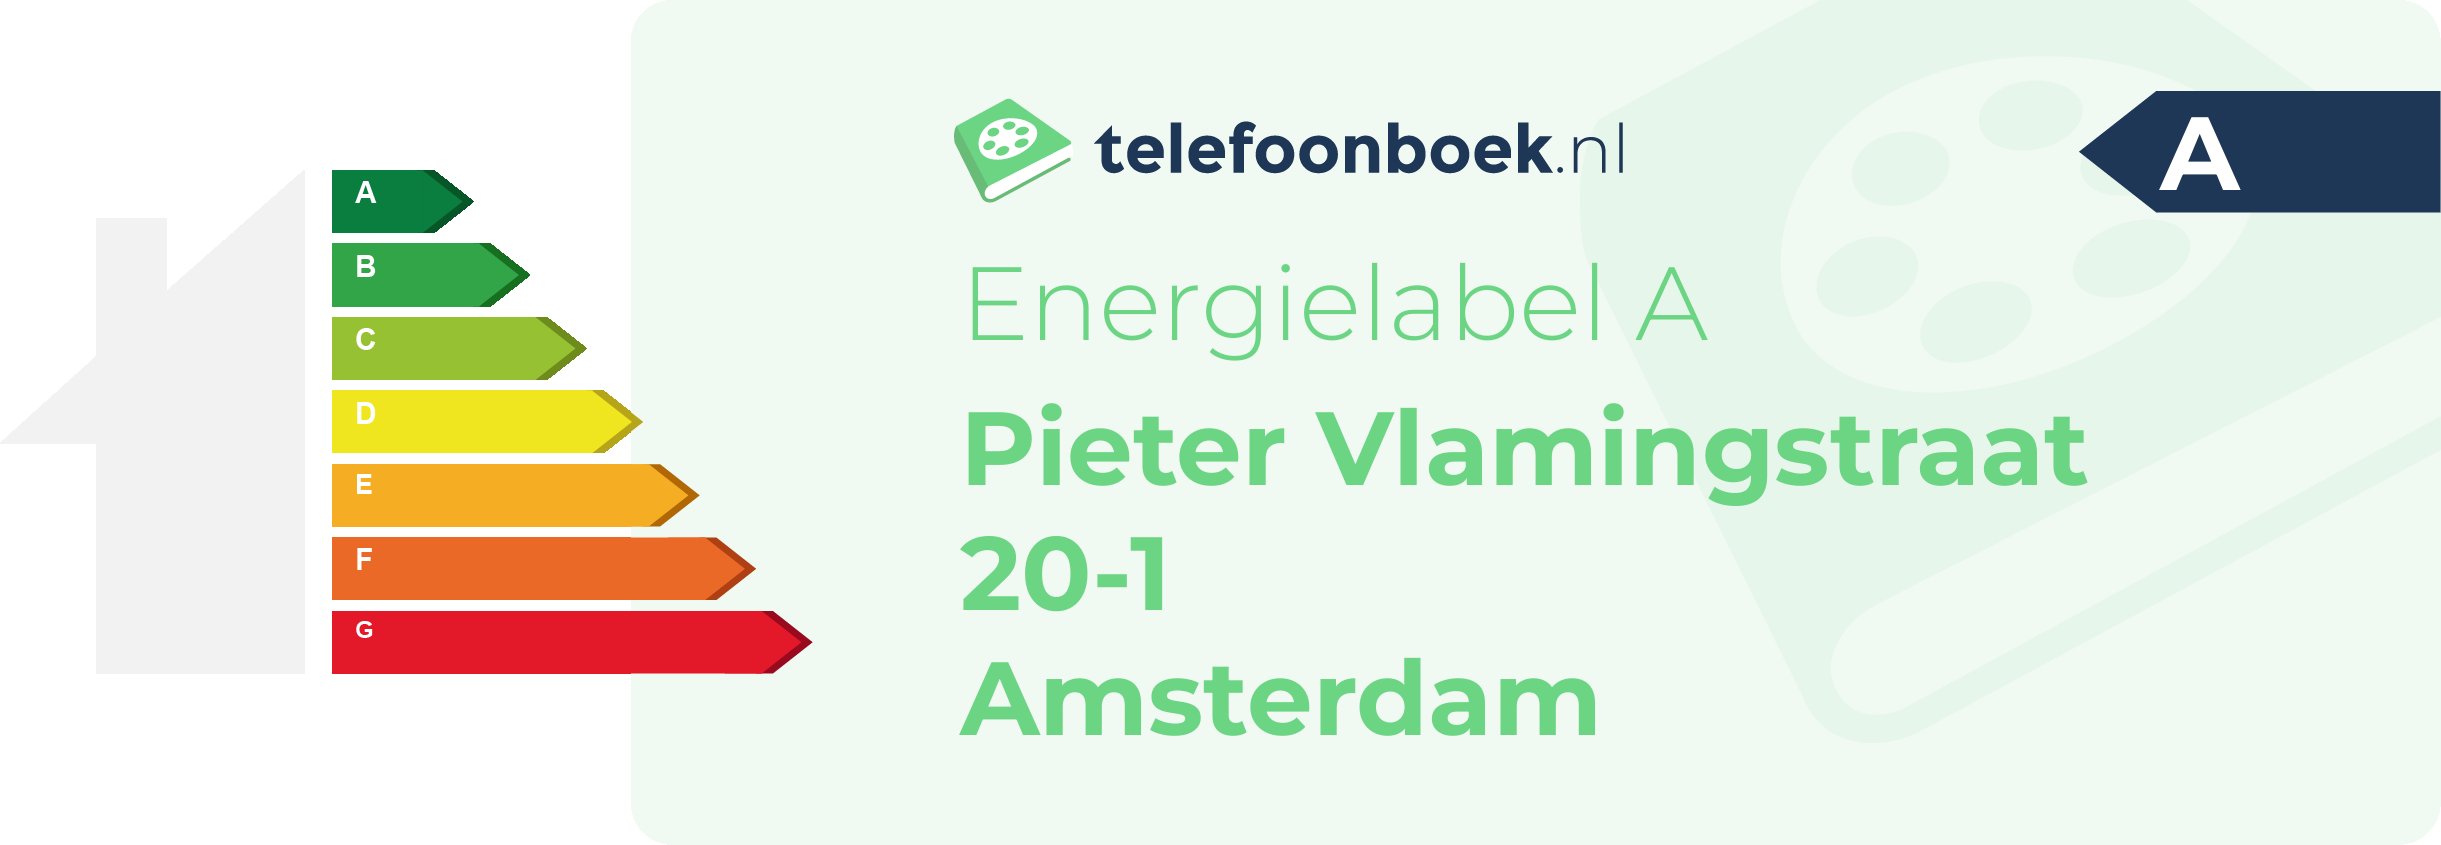 Energielabel Pieter Vlamingstraat 20-1 Amsterdam